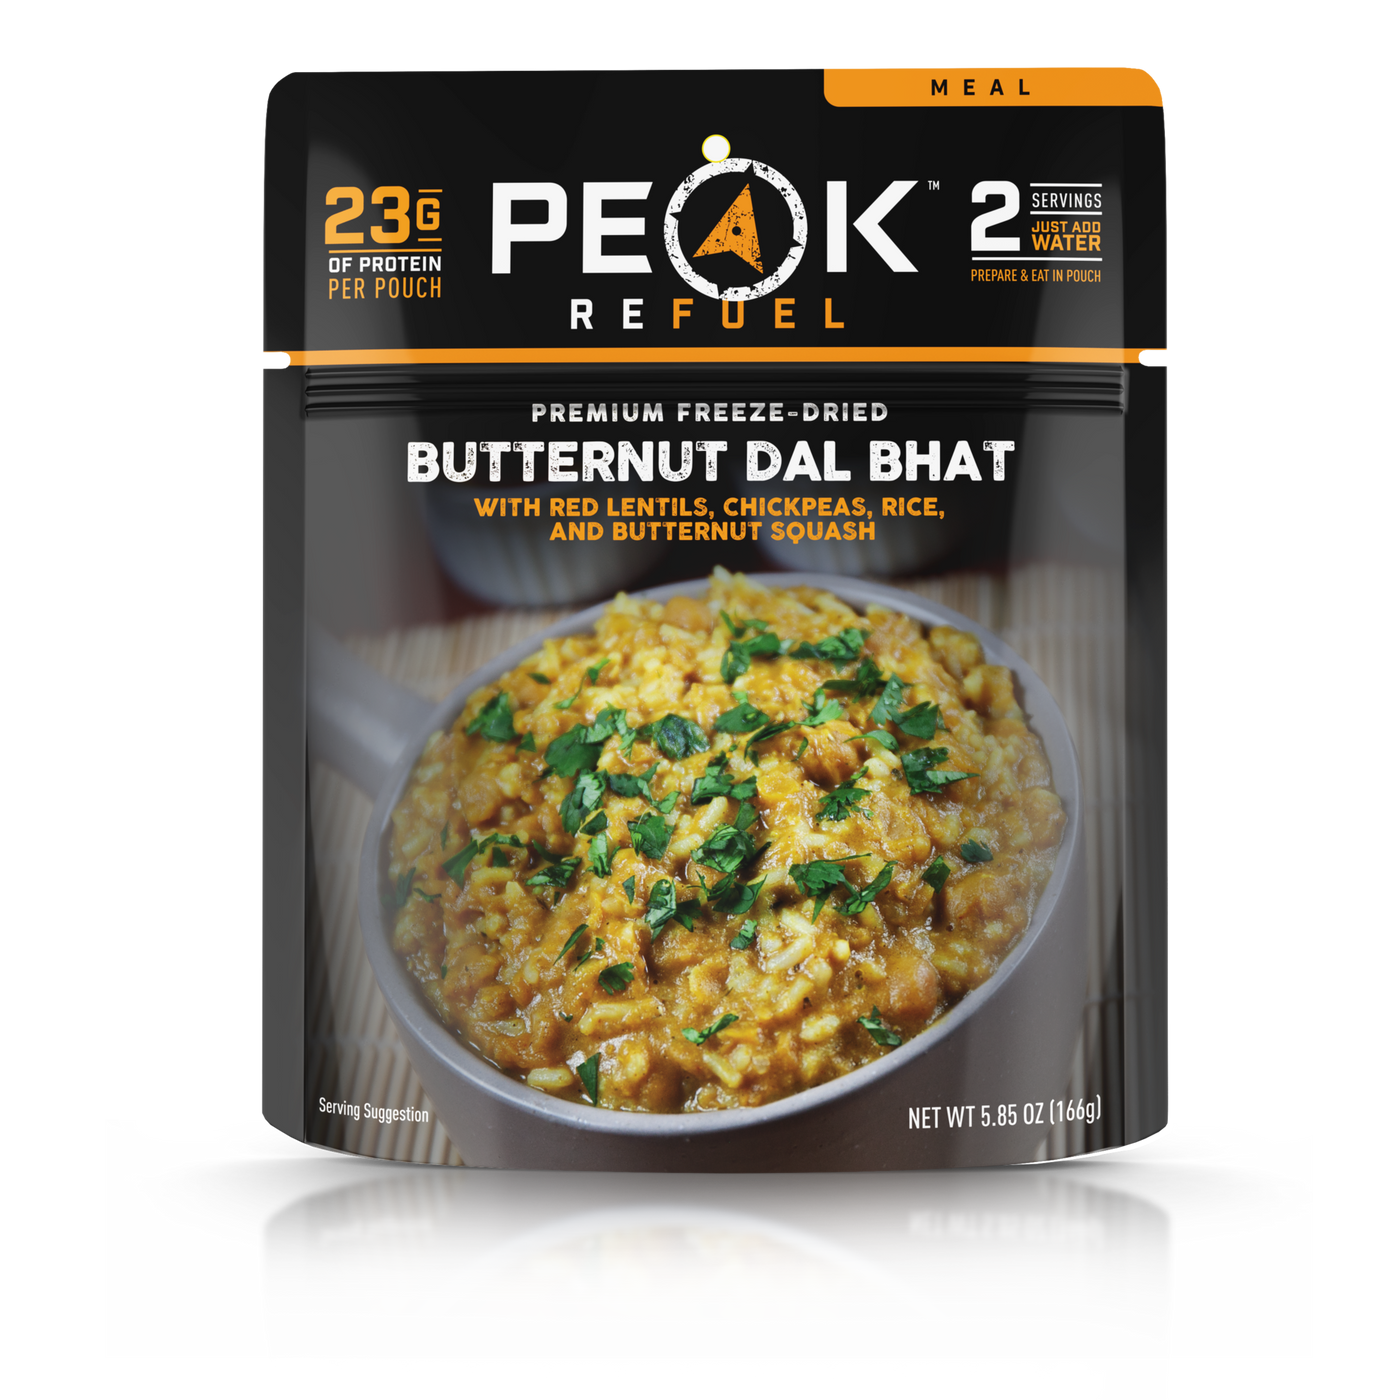 Peak refuel butternut dal bhat meal